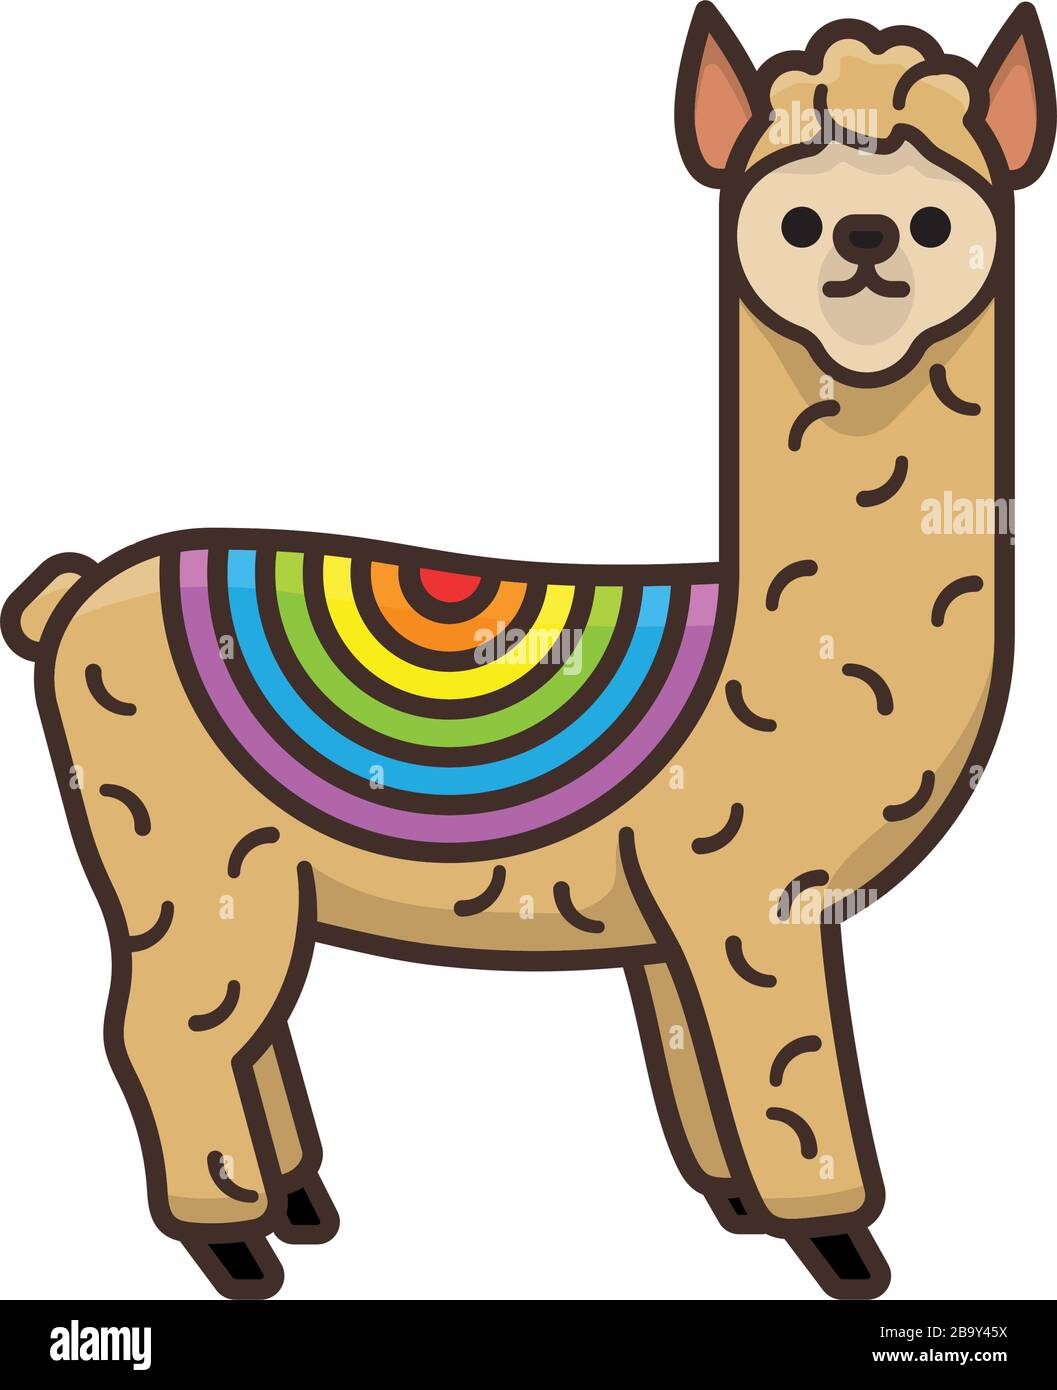 Alpaka mit Regenbogenfarbe isolierte Vektorgrafiken für den Rainbow Day am 3. April. Südamerikanisches Camelid-Symbol. Stock Vektor